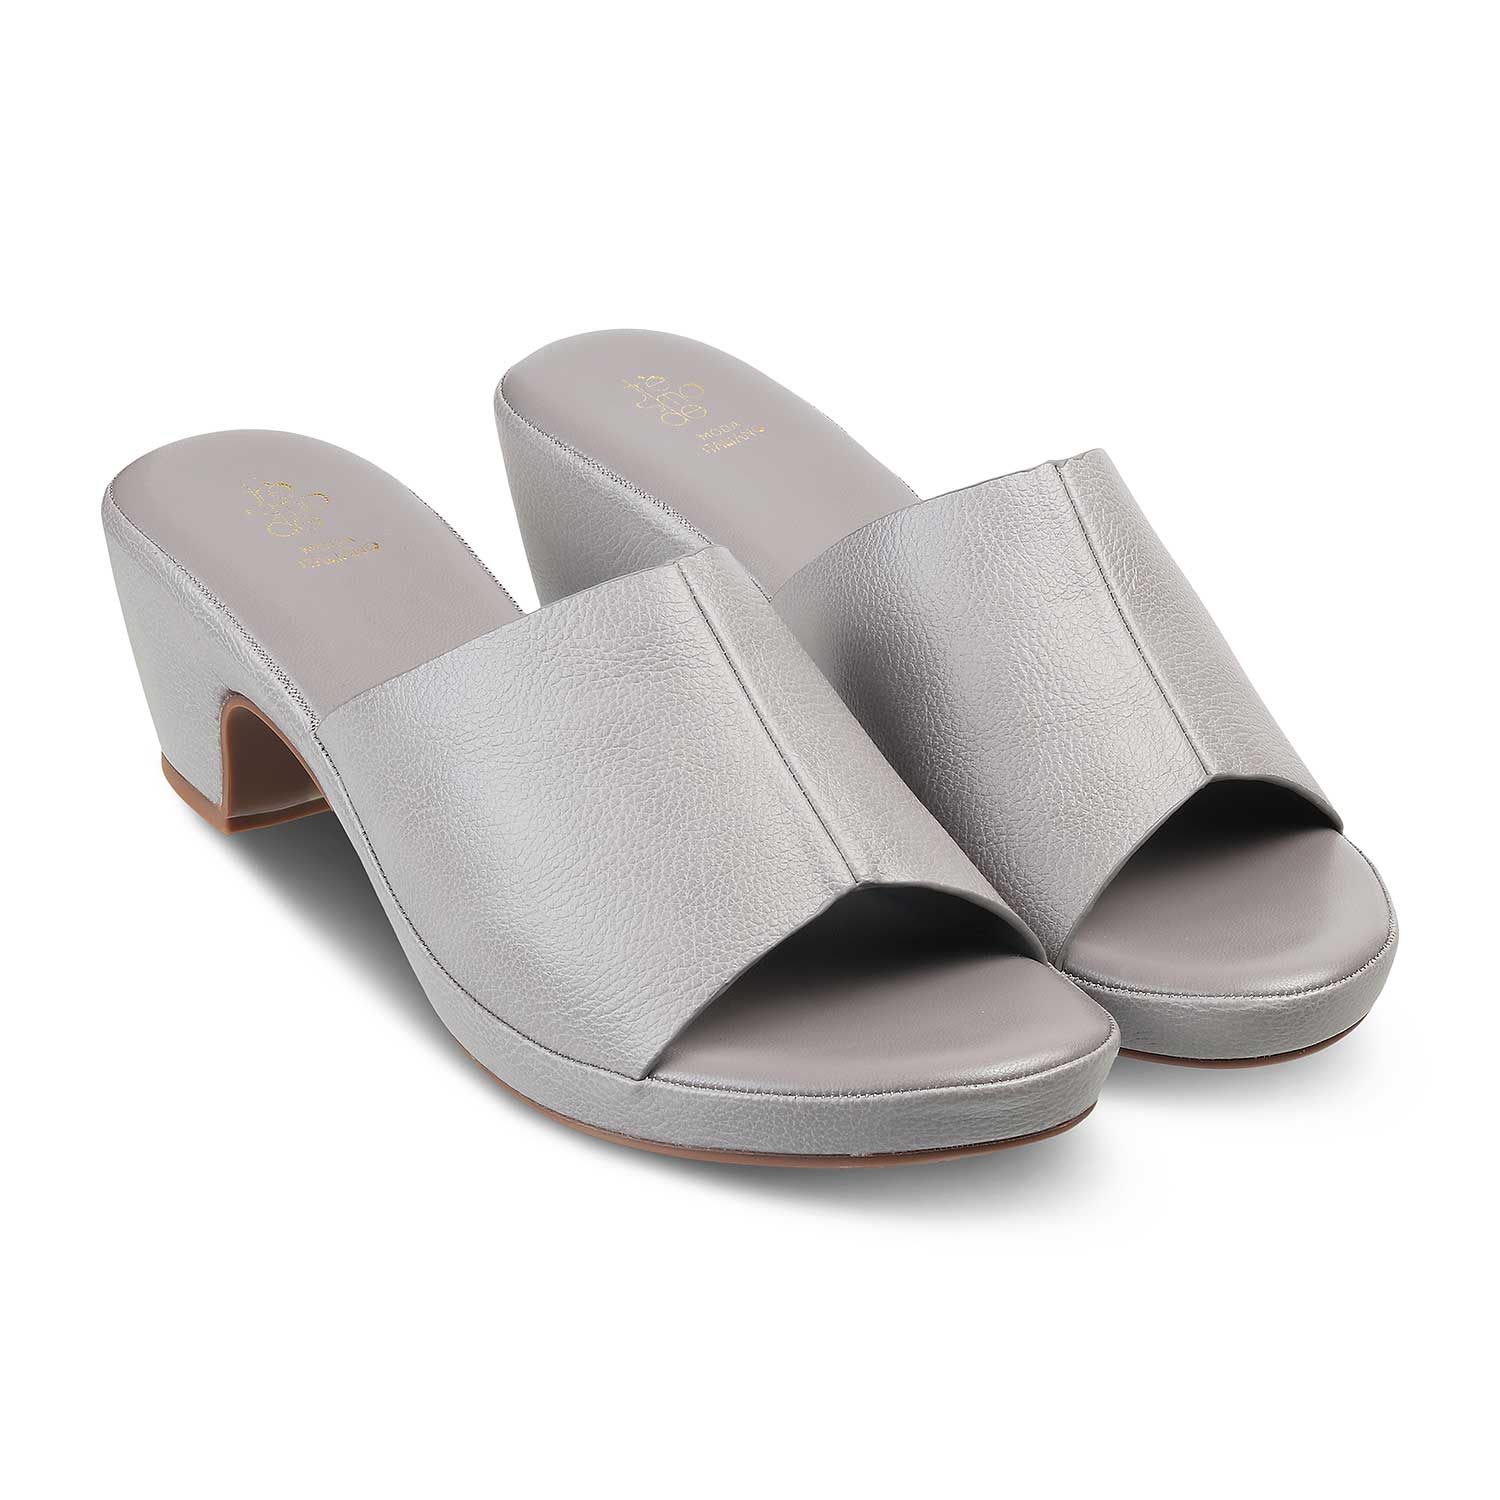 Tresmode-The Brixy Grey Women's Casual Block Heel Sandals Tresmode-Tresmode